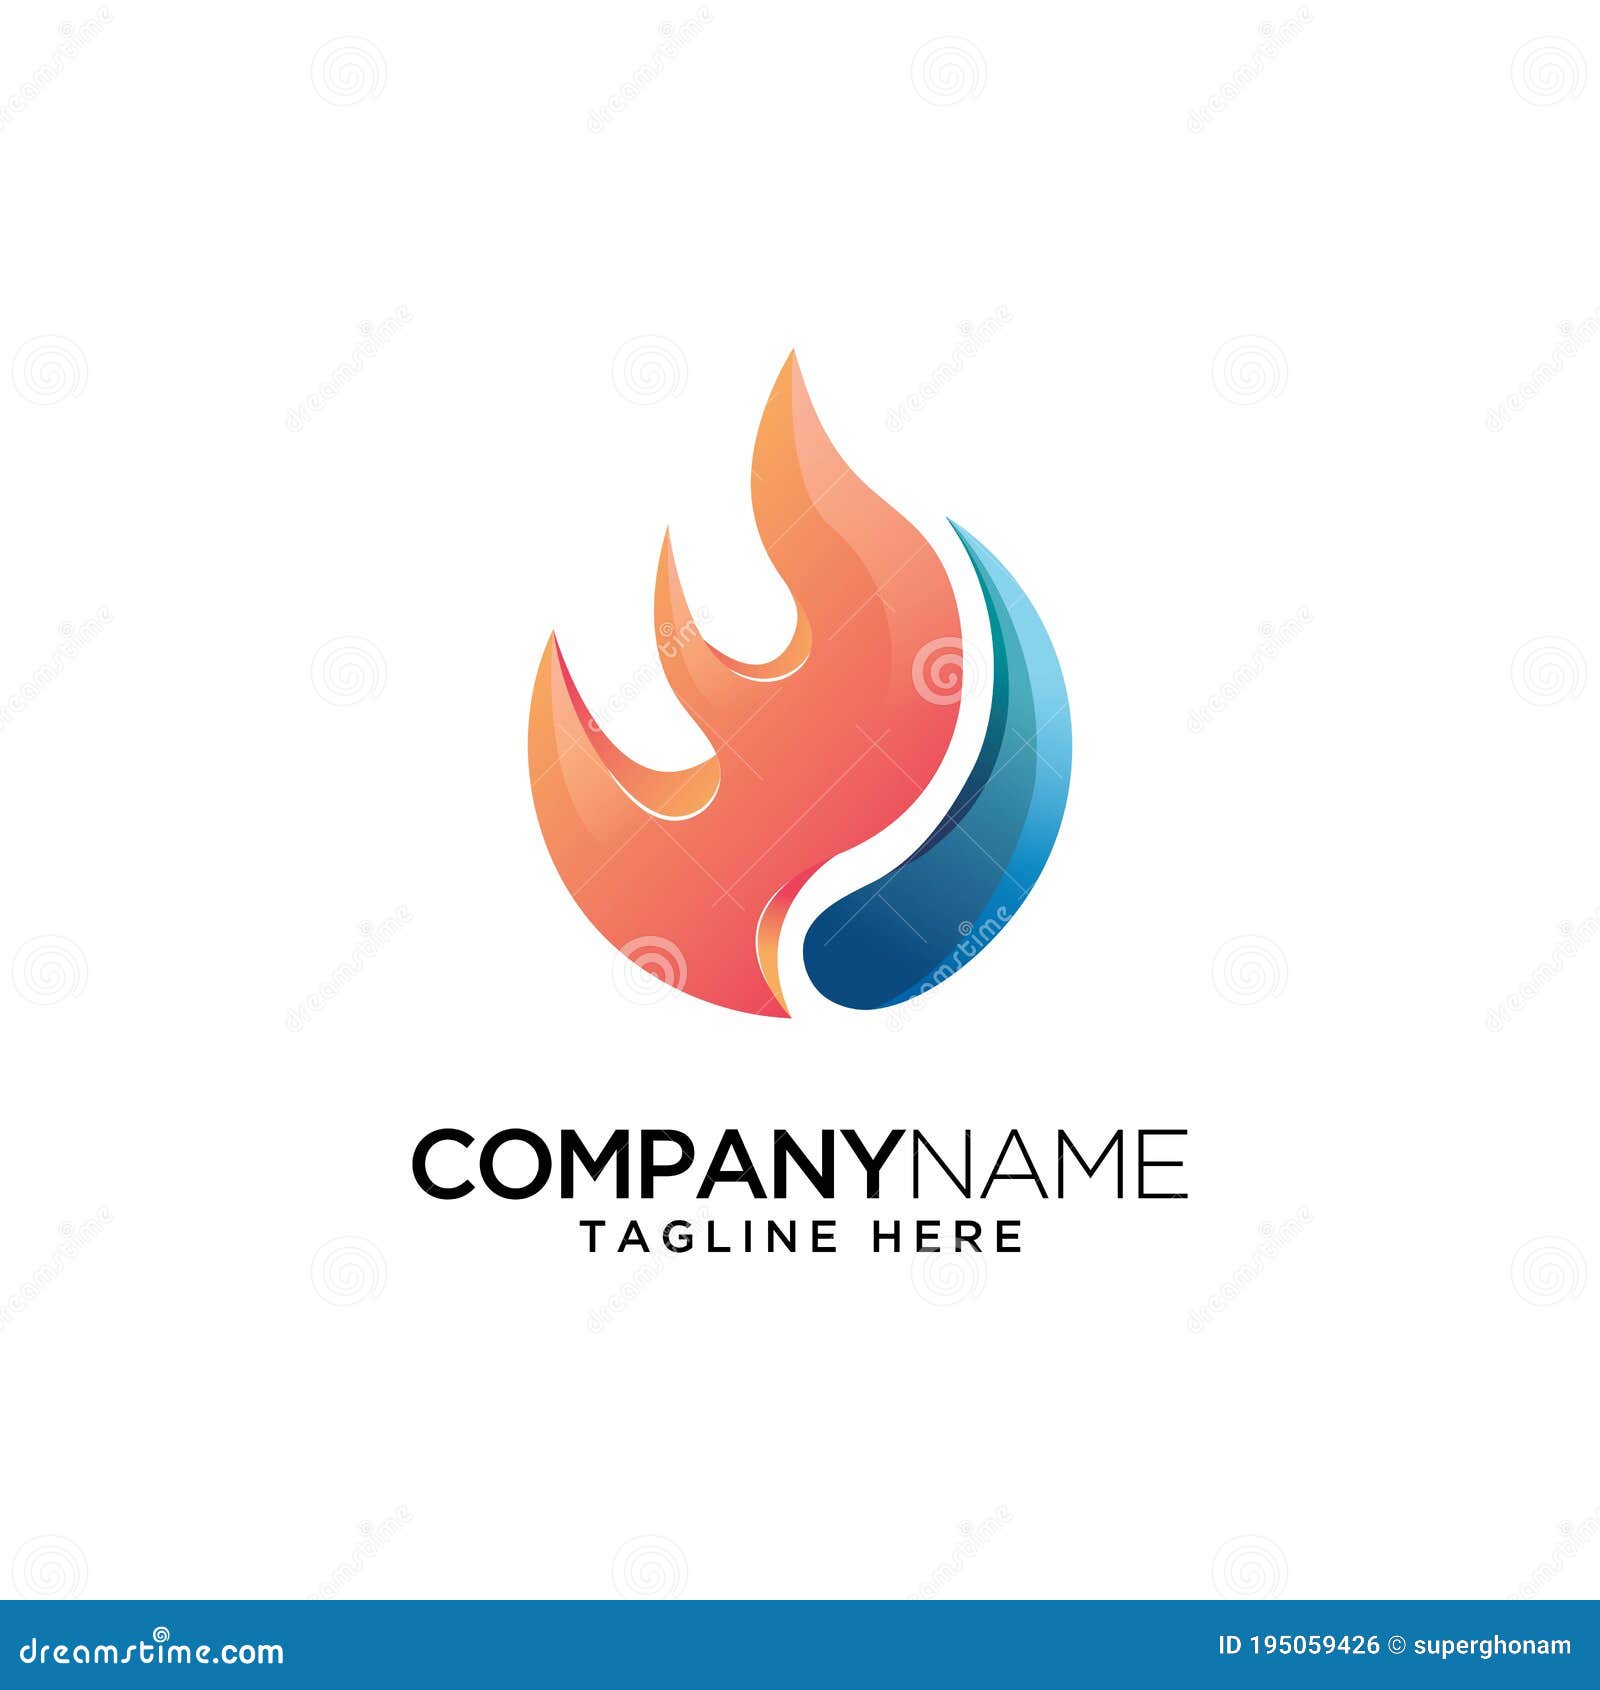 Design de logotipo de combinação de fogo e água